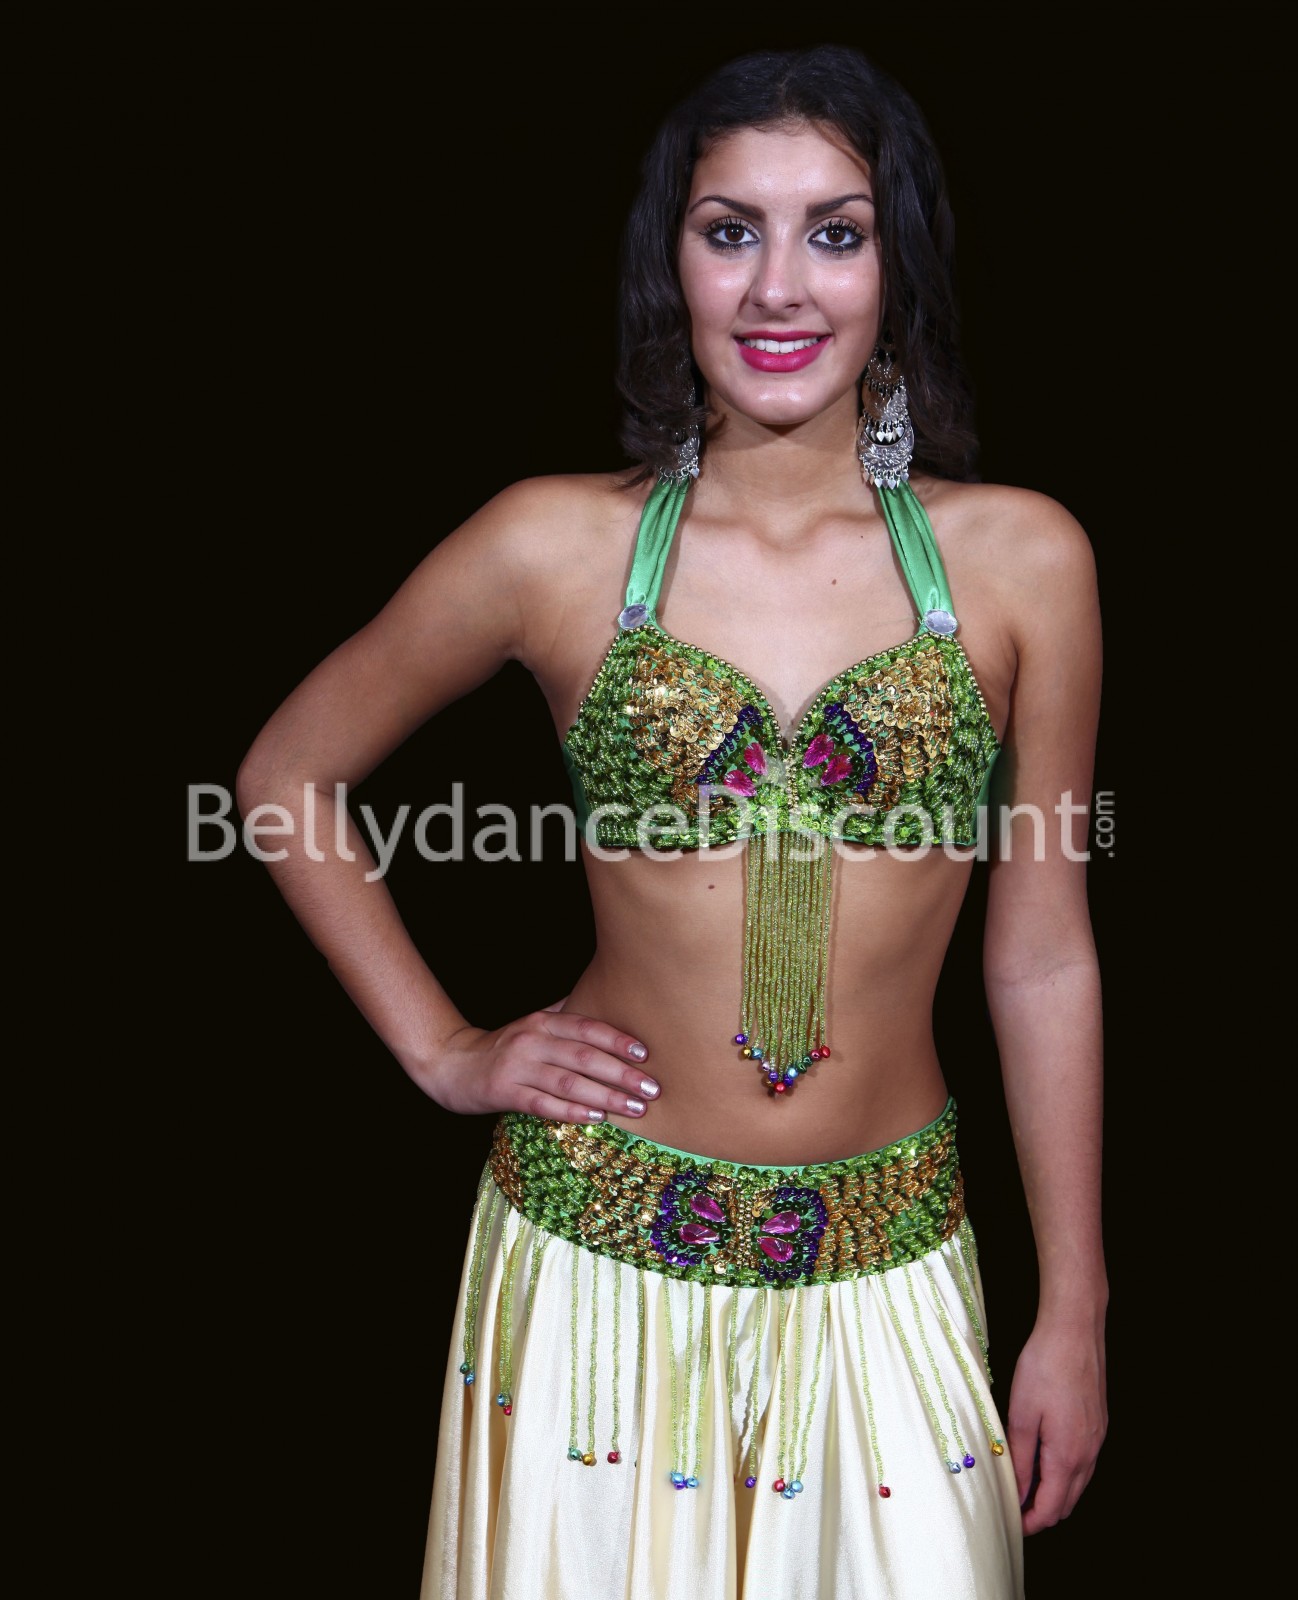 Bellydance bra + belt set green and gold - 49,90 €